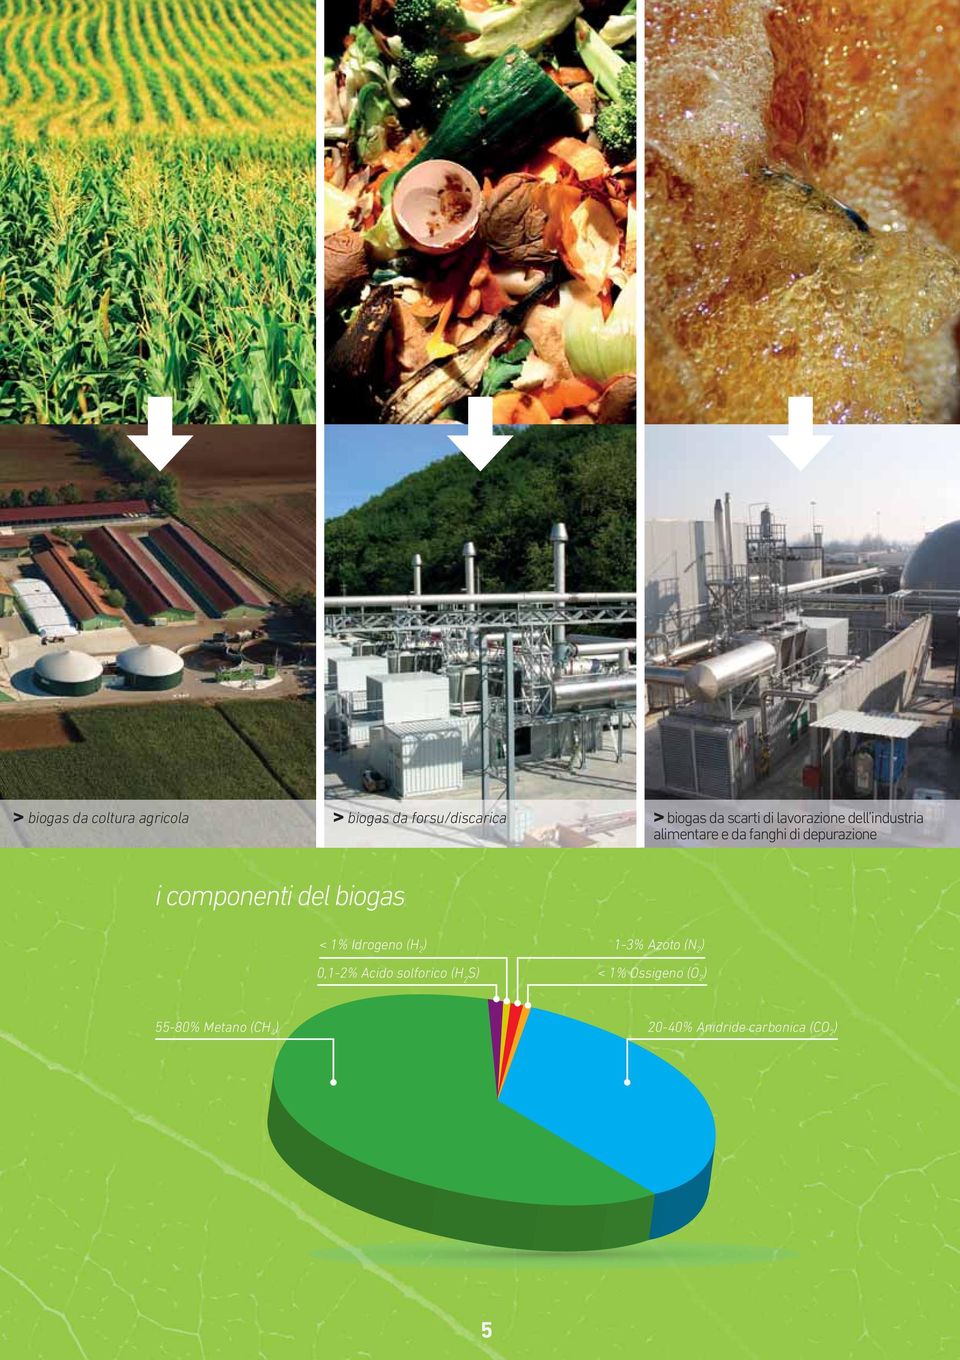 componenti del biogas < 1% Idrogeno (H 2 ) 13% Azoto (N 2 ) 0,12% Acido